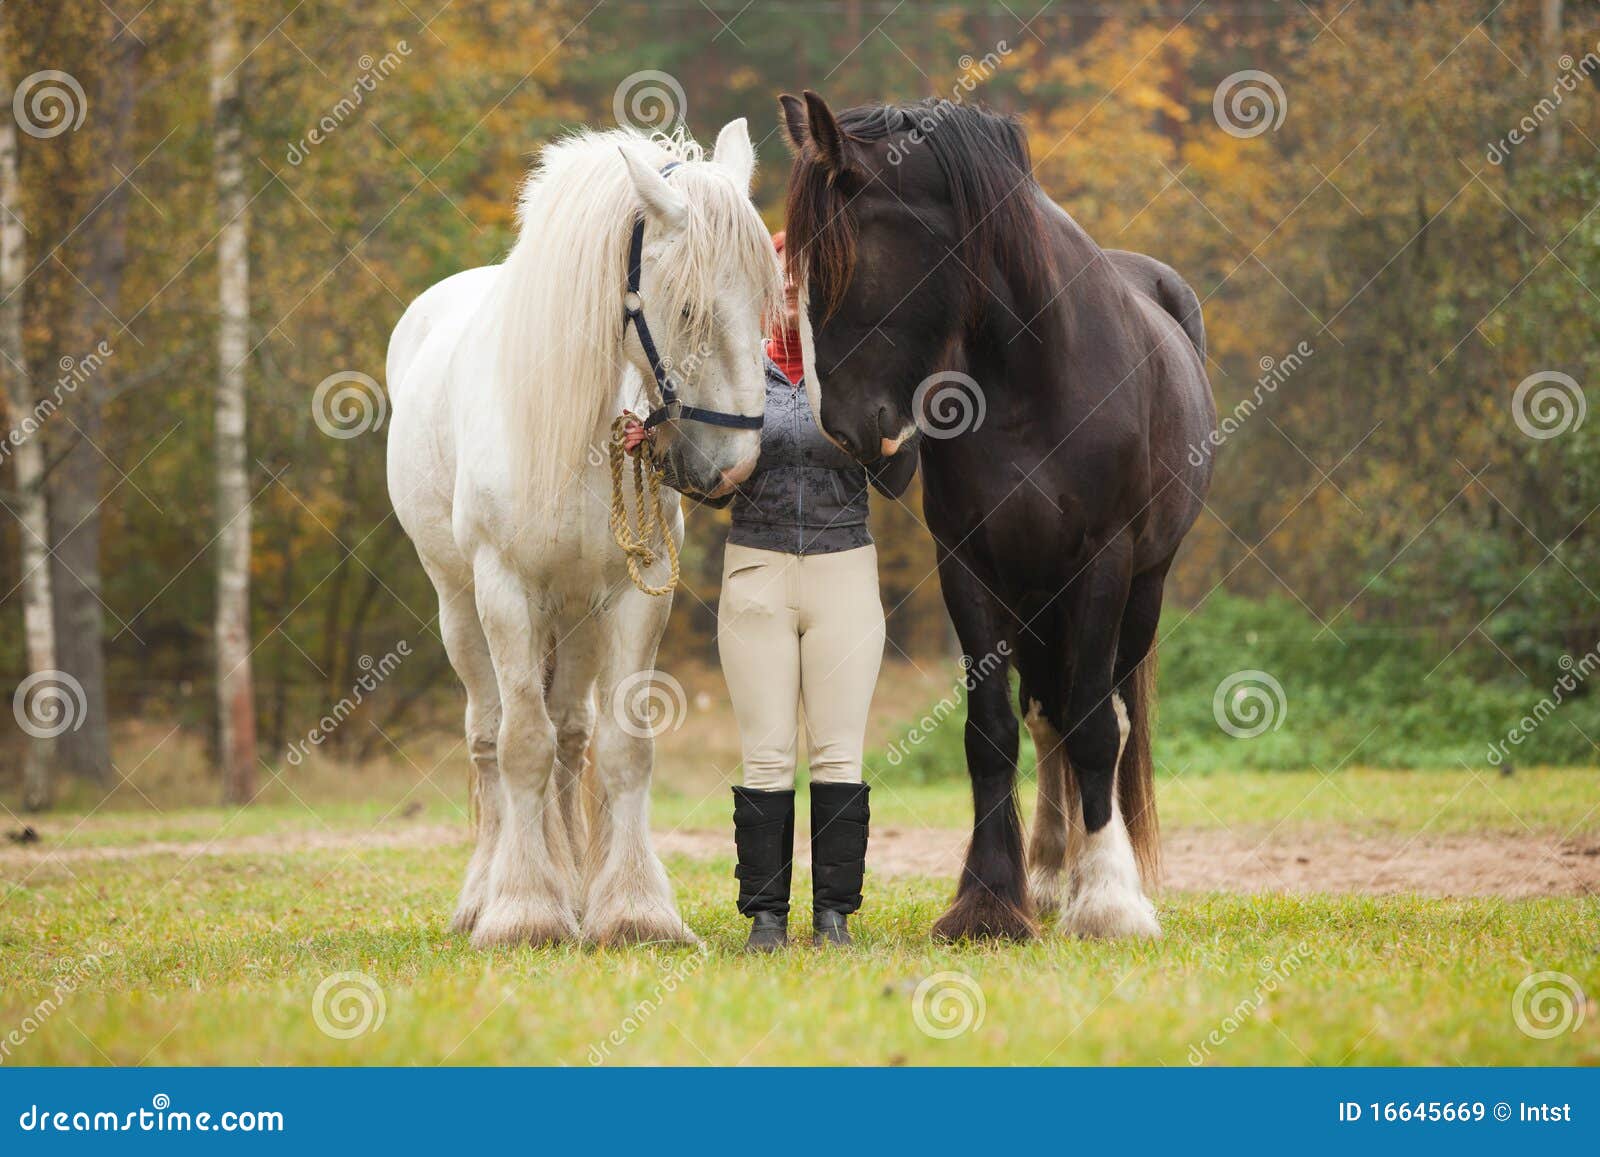 femme-avec-deux-chevaux-de-comt%C3%A9-16645669.jpg